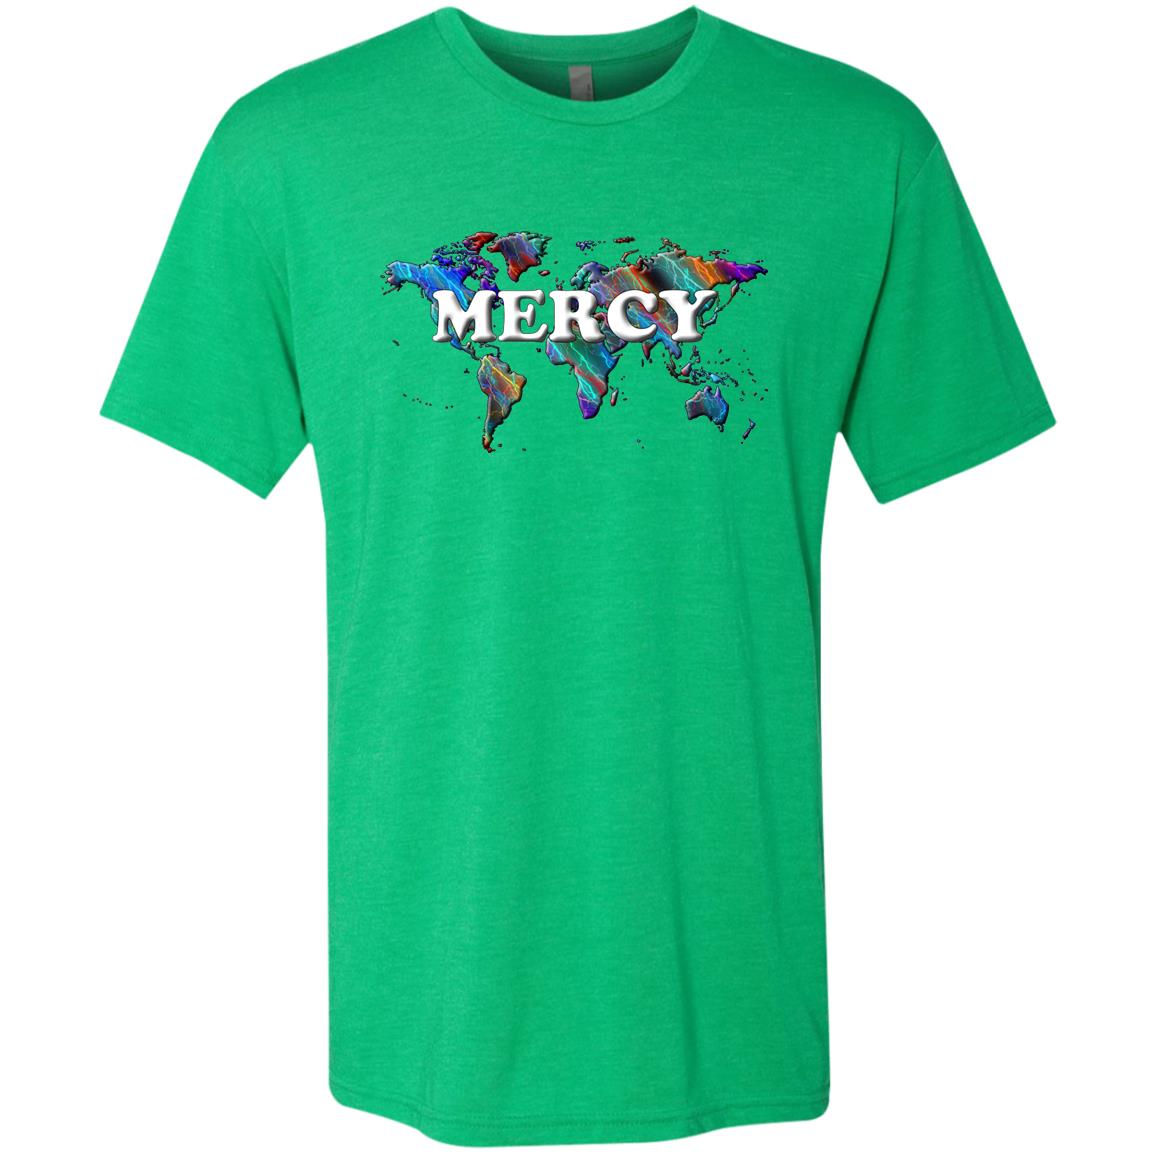 Mercy Statement T-Shirt